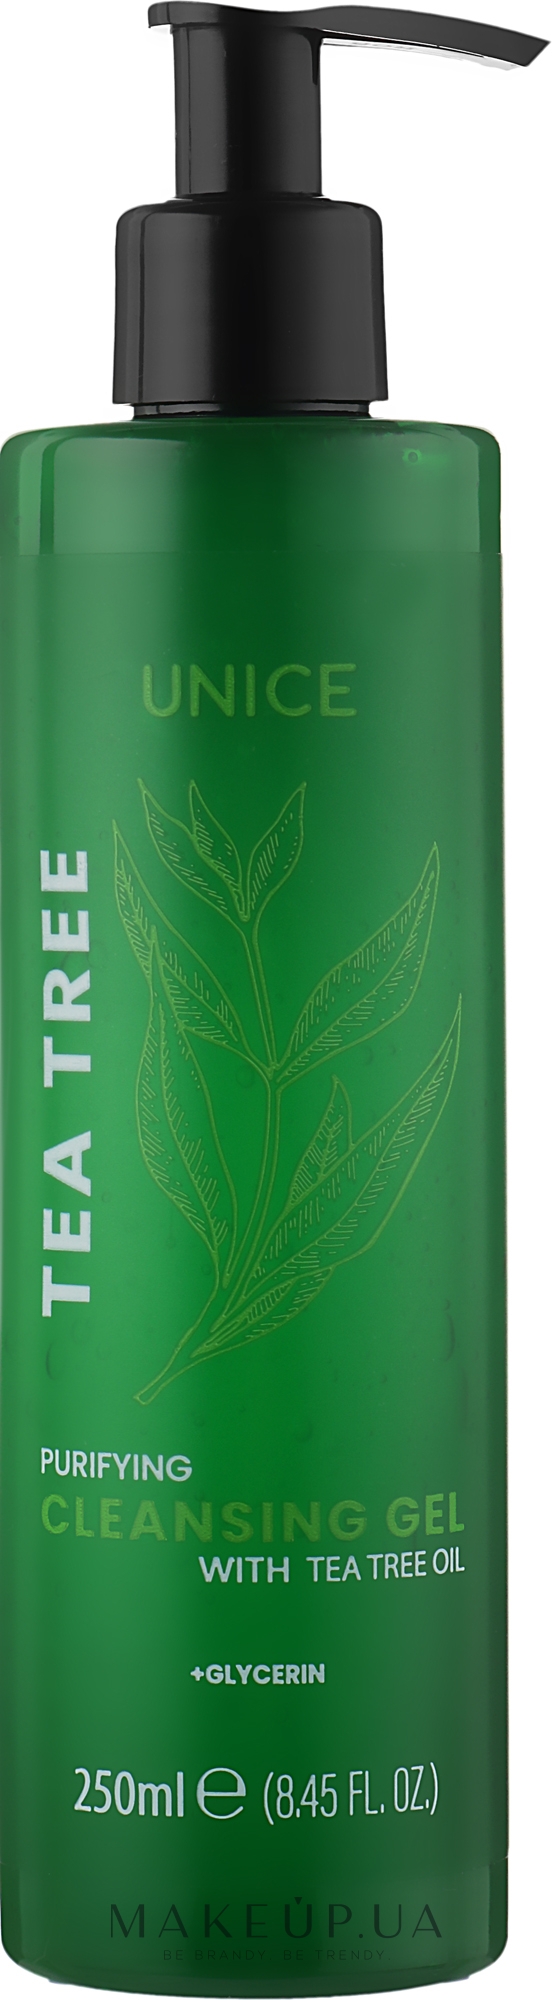 Очищувальний гель для вмивання з олією чайного дерева - Unice Tea Tree Purifying Cleansing Gel — фото 250ml